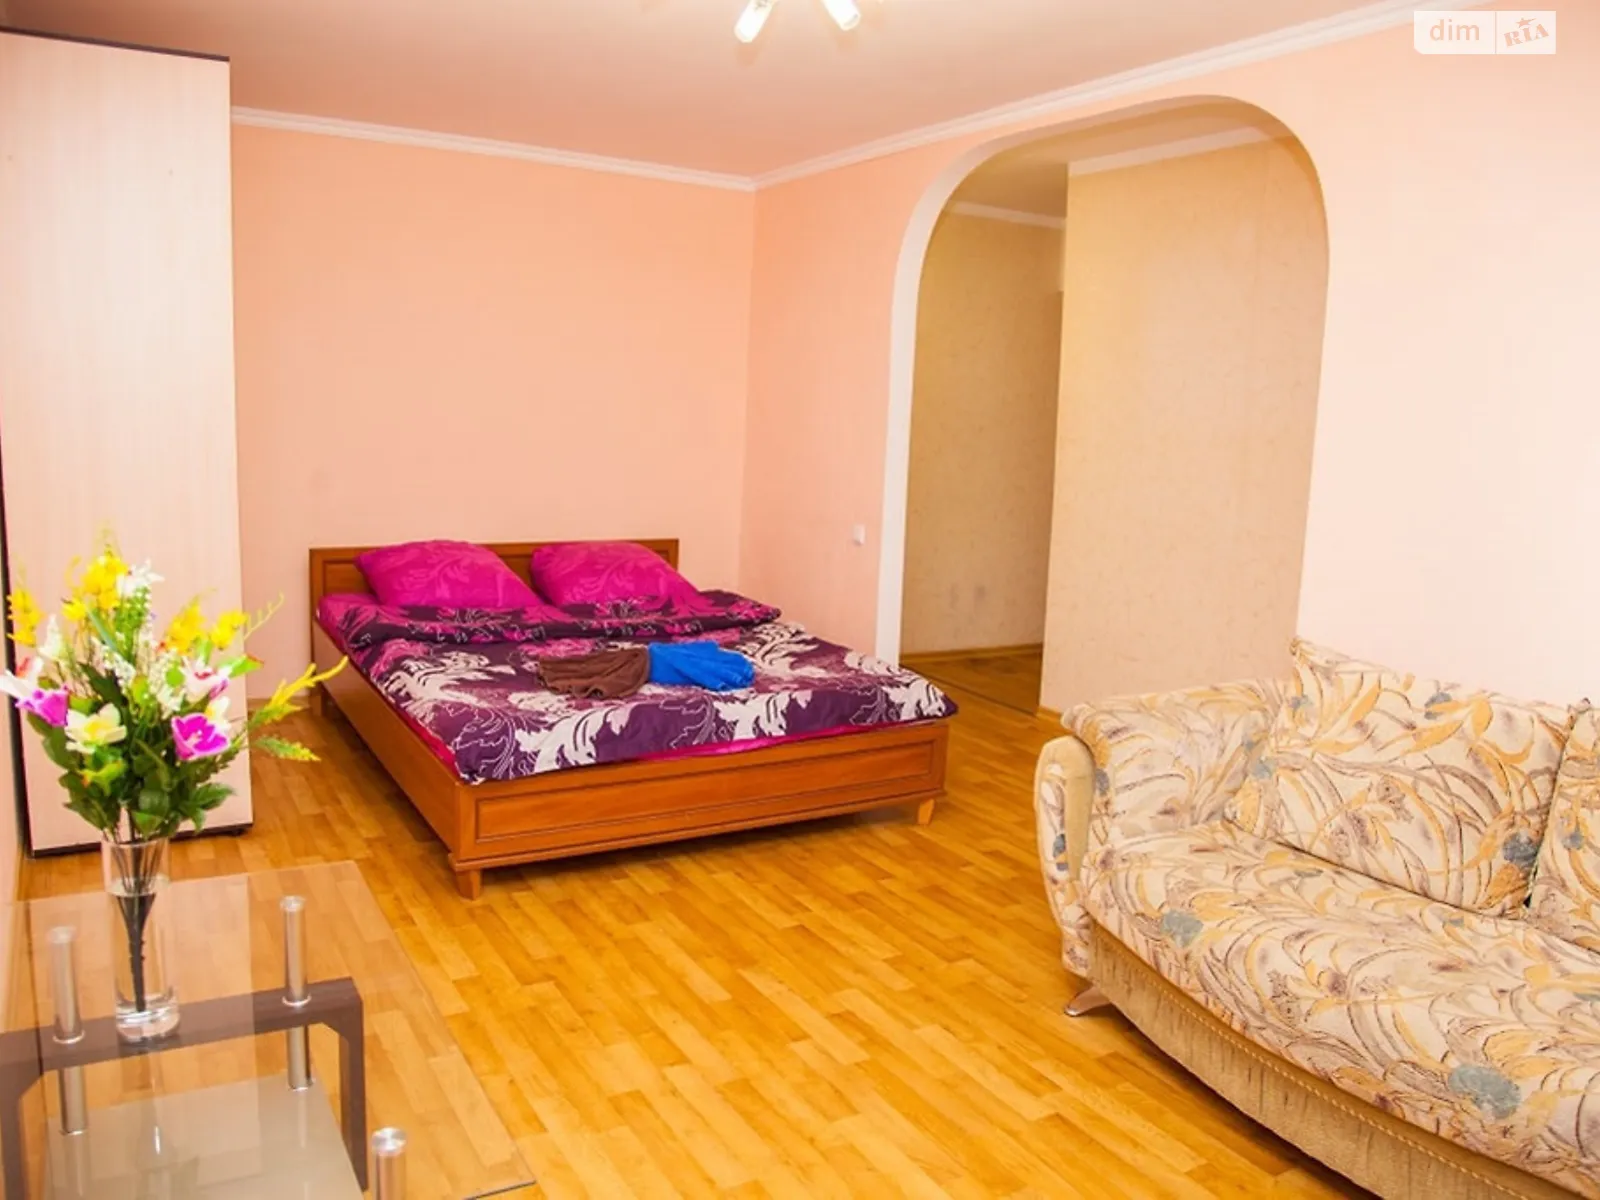 1-кімнатна квартира у Запоріжжі, цена: 850 грн - фото 1